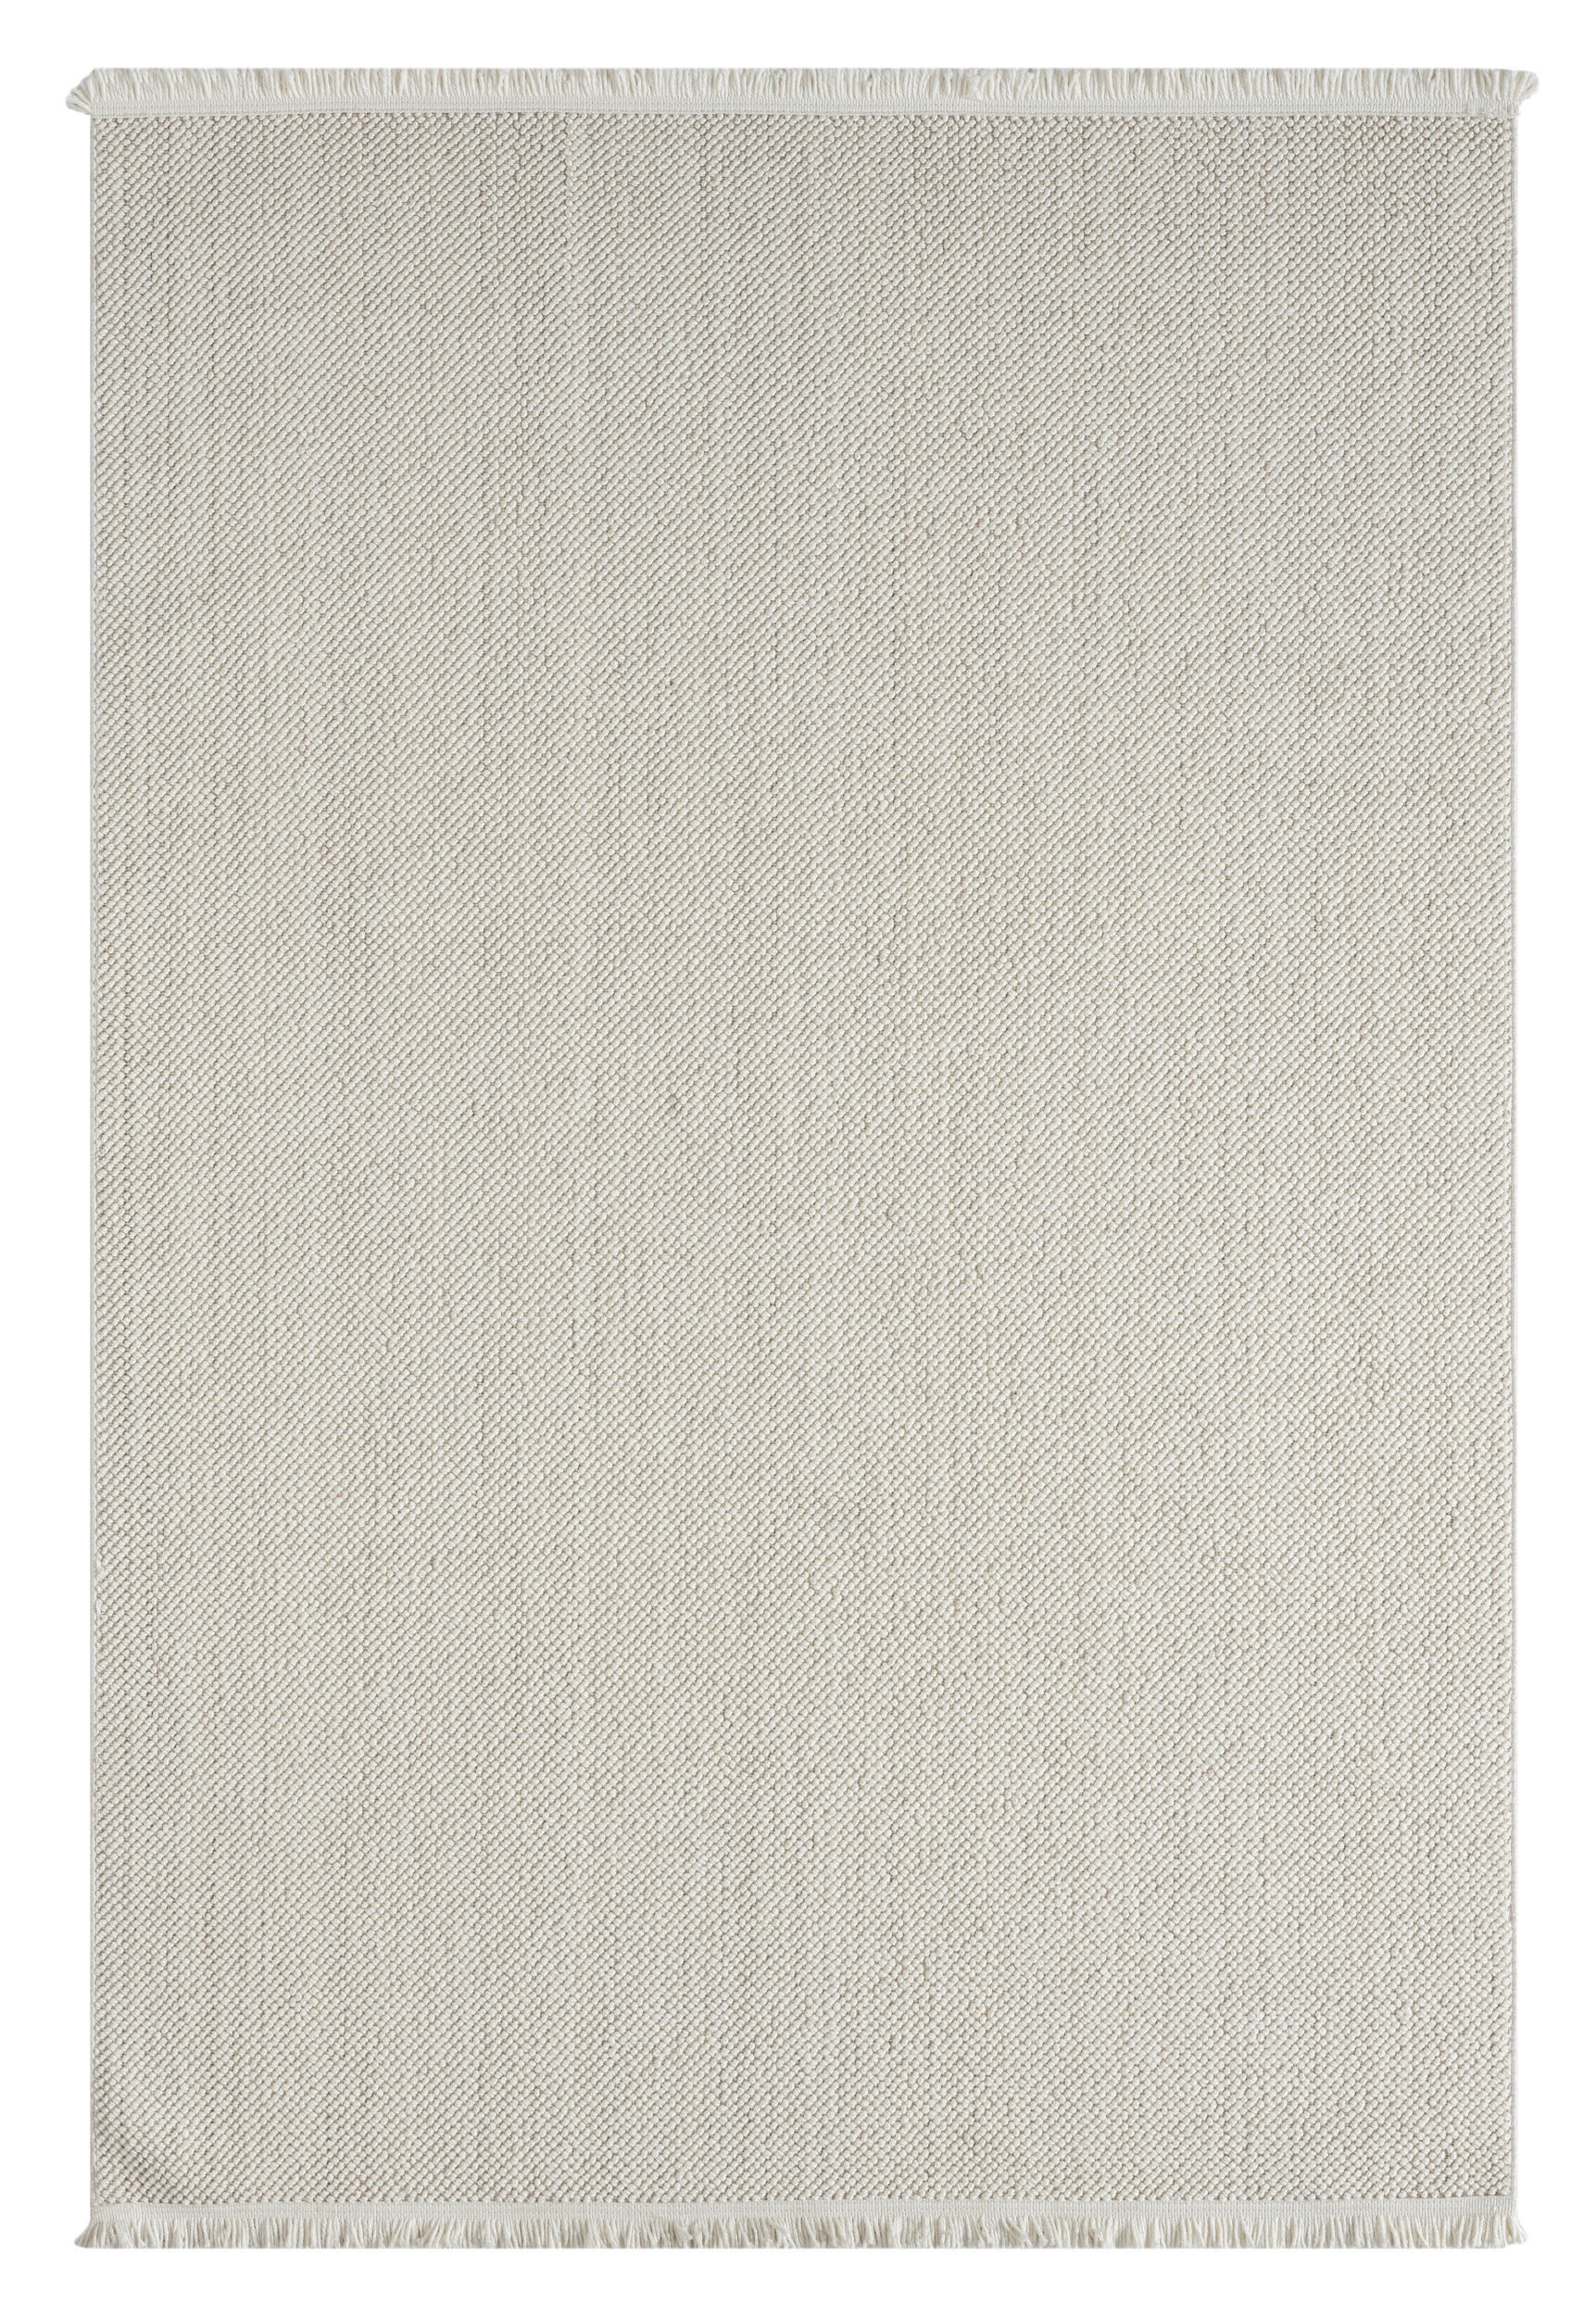 FLACHWEBETEPPICH 160/230 cm Ava  - Weiß, Basics, Textil (160/230cm)